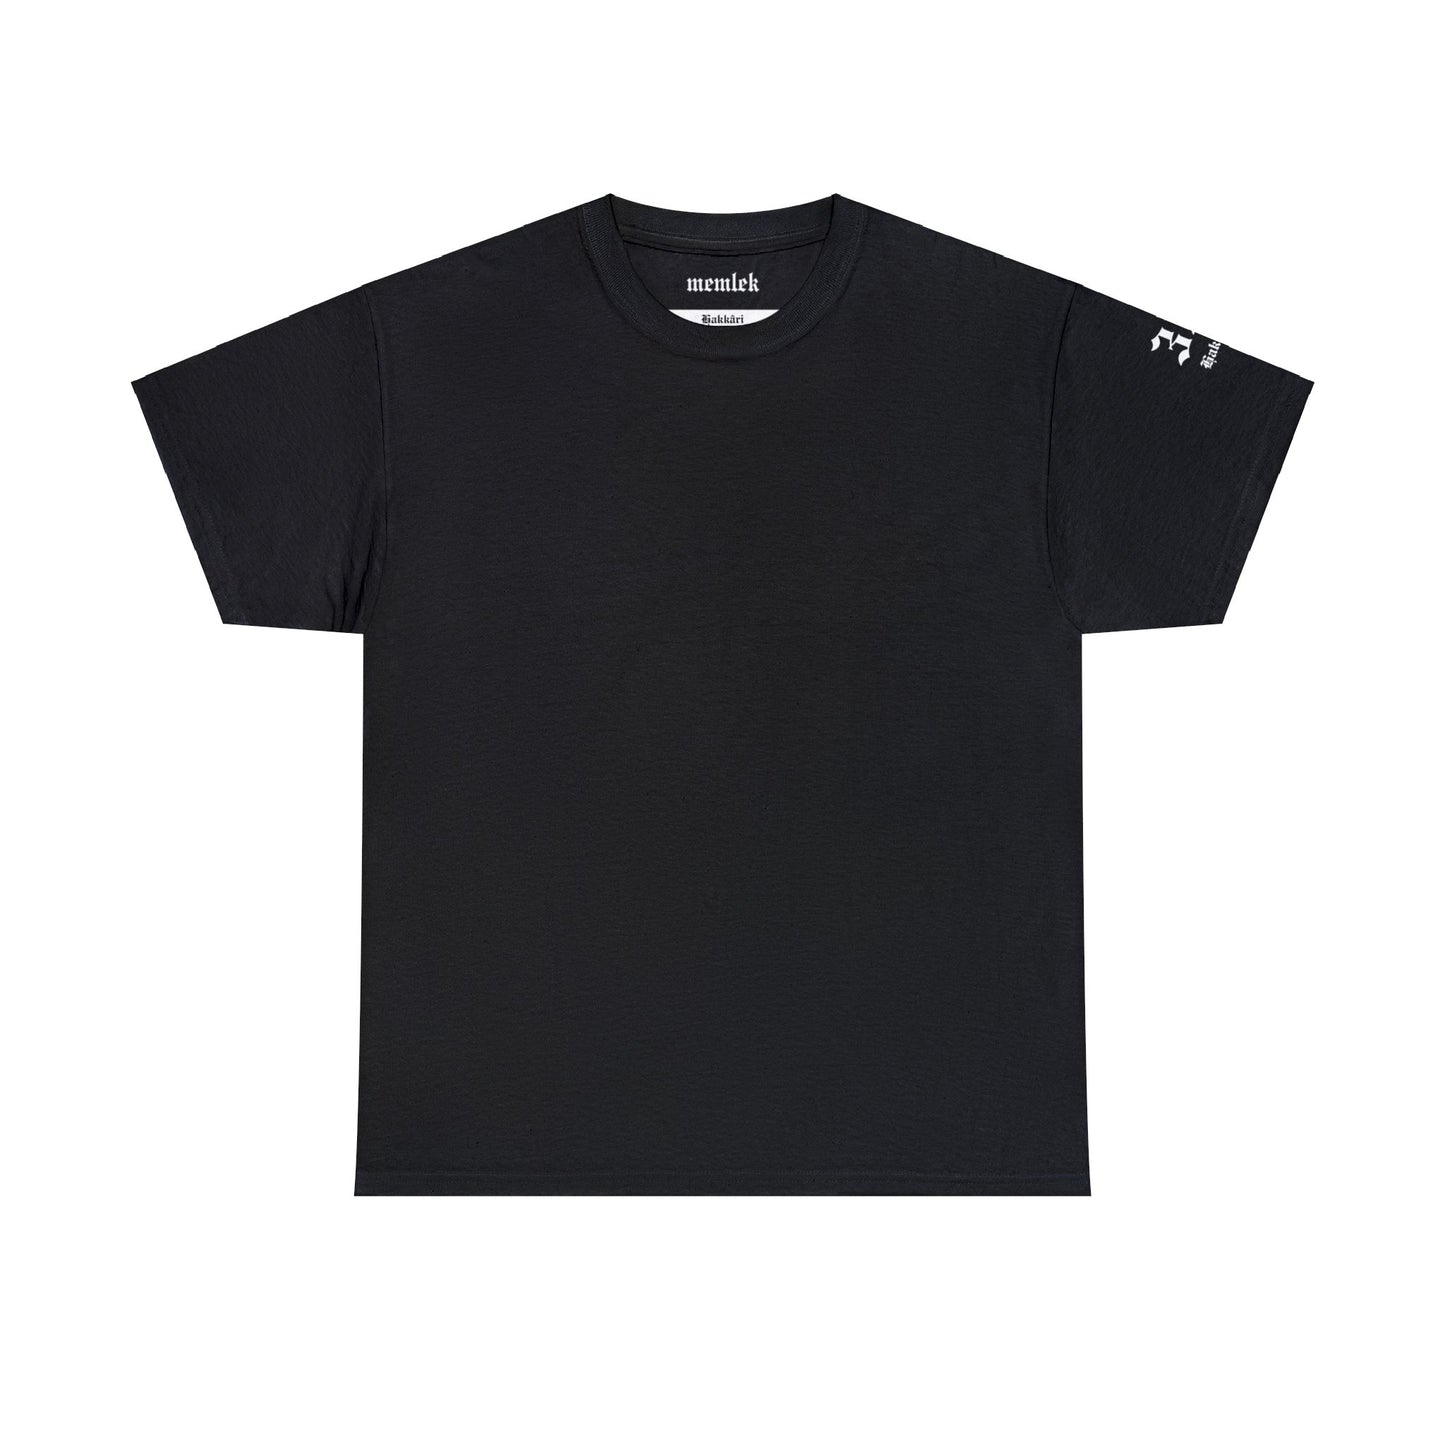 Şehirim - 30 Hakkâri - T-Shirt - Back Print - Black